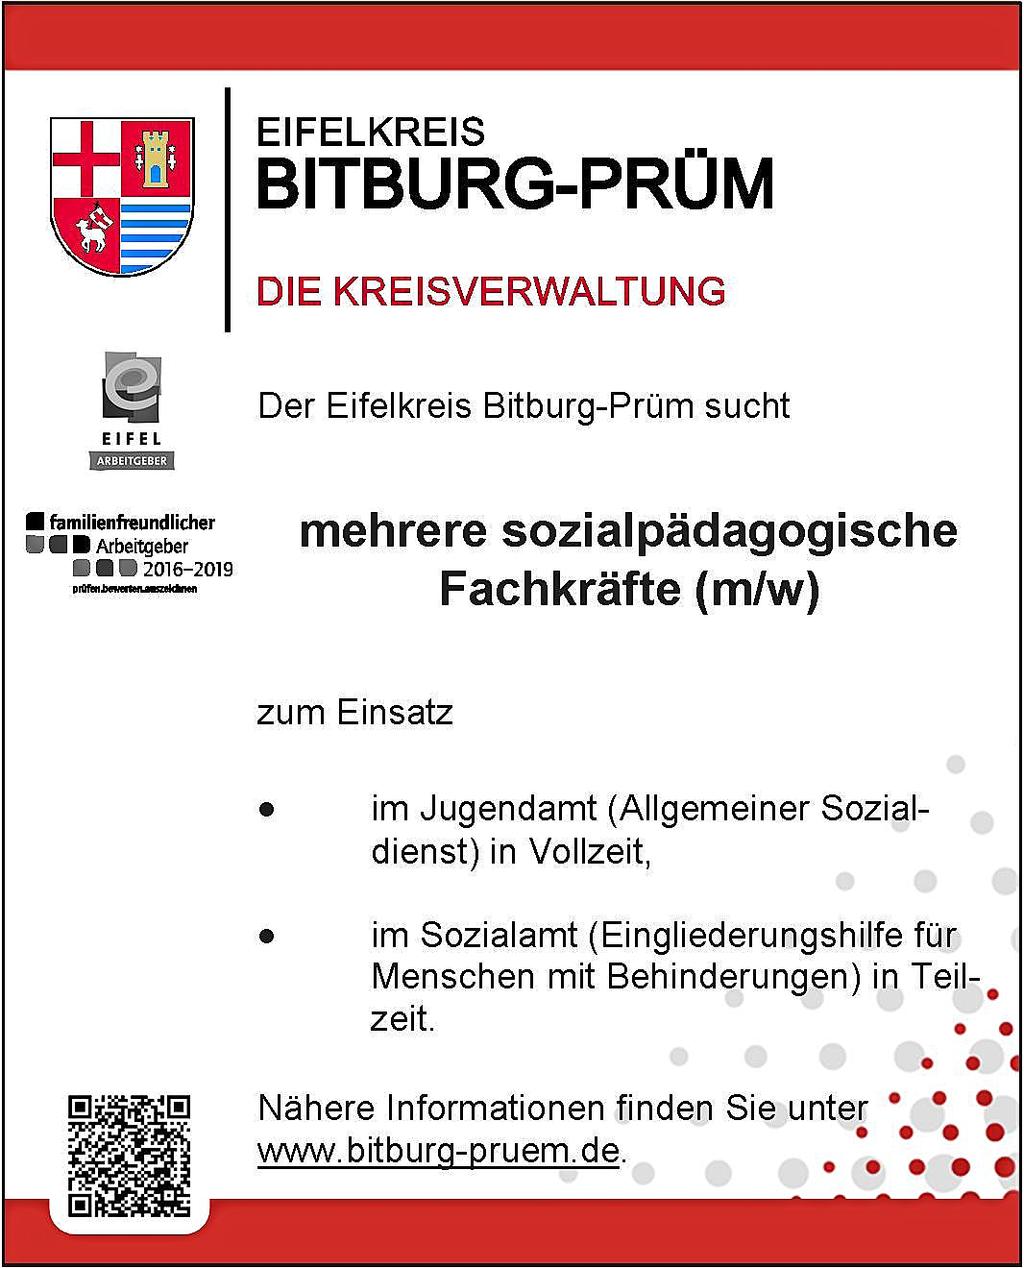 KreisNachrichten Bitburg-Prüm Ausgabe 15/2017 Seite 7 Dokumentarfilm über den Westwall im Eifelkreis aufgeführt zösischen Besatzung dem Königreich Preußen zugeteilt wurde.